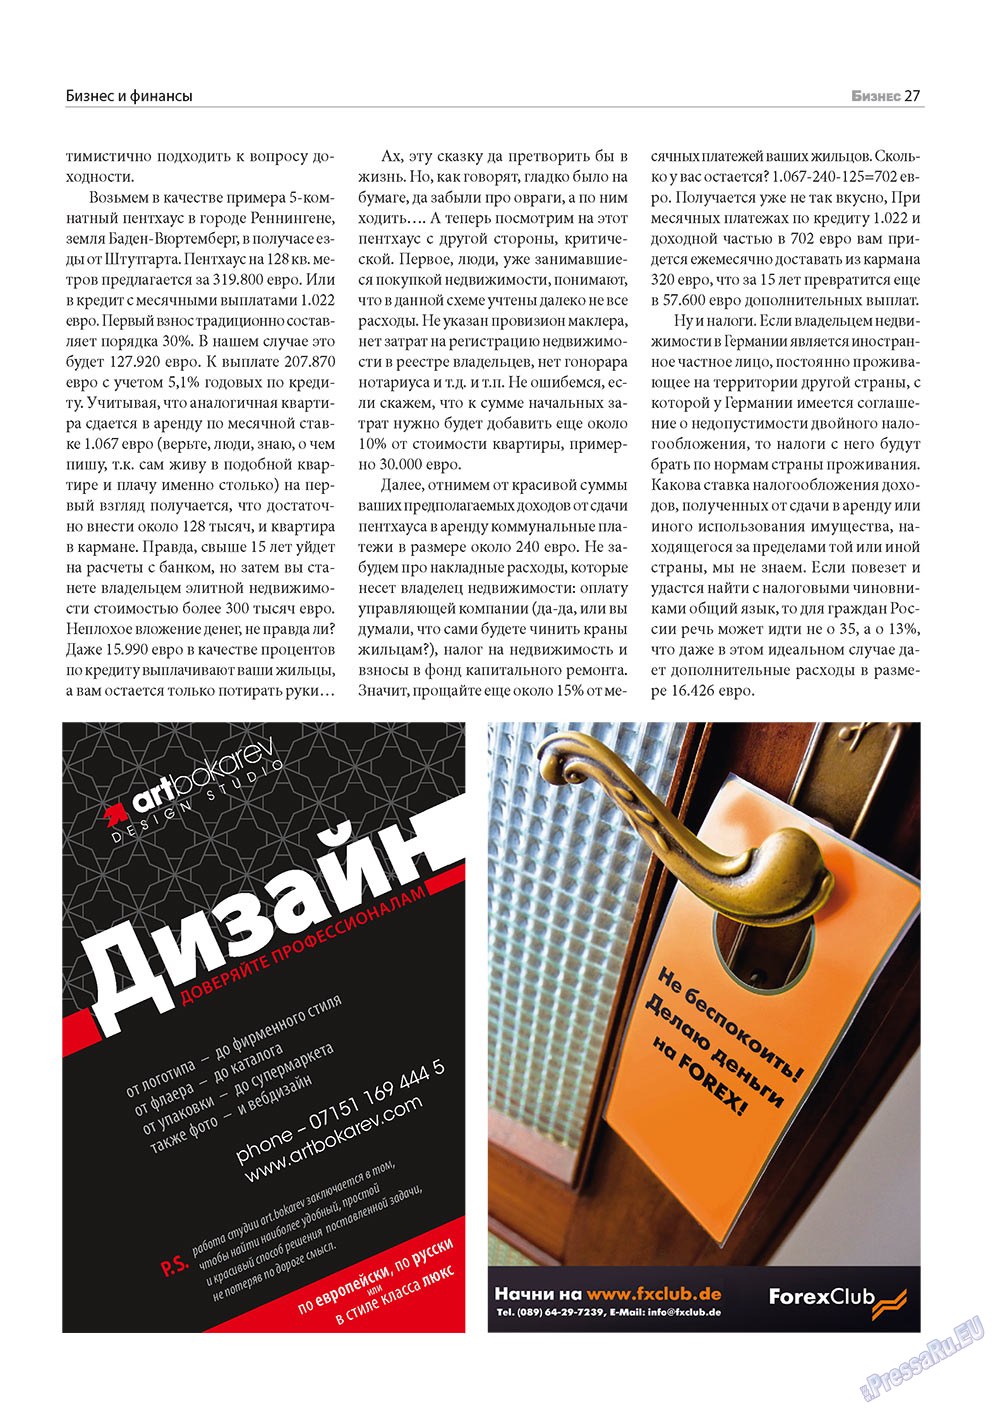 Business (Zeitschrift). 2010 Jahr, Ausgabe 11, Seite 27